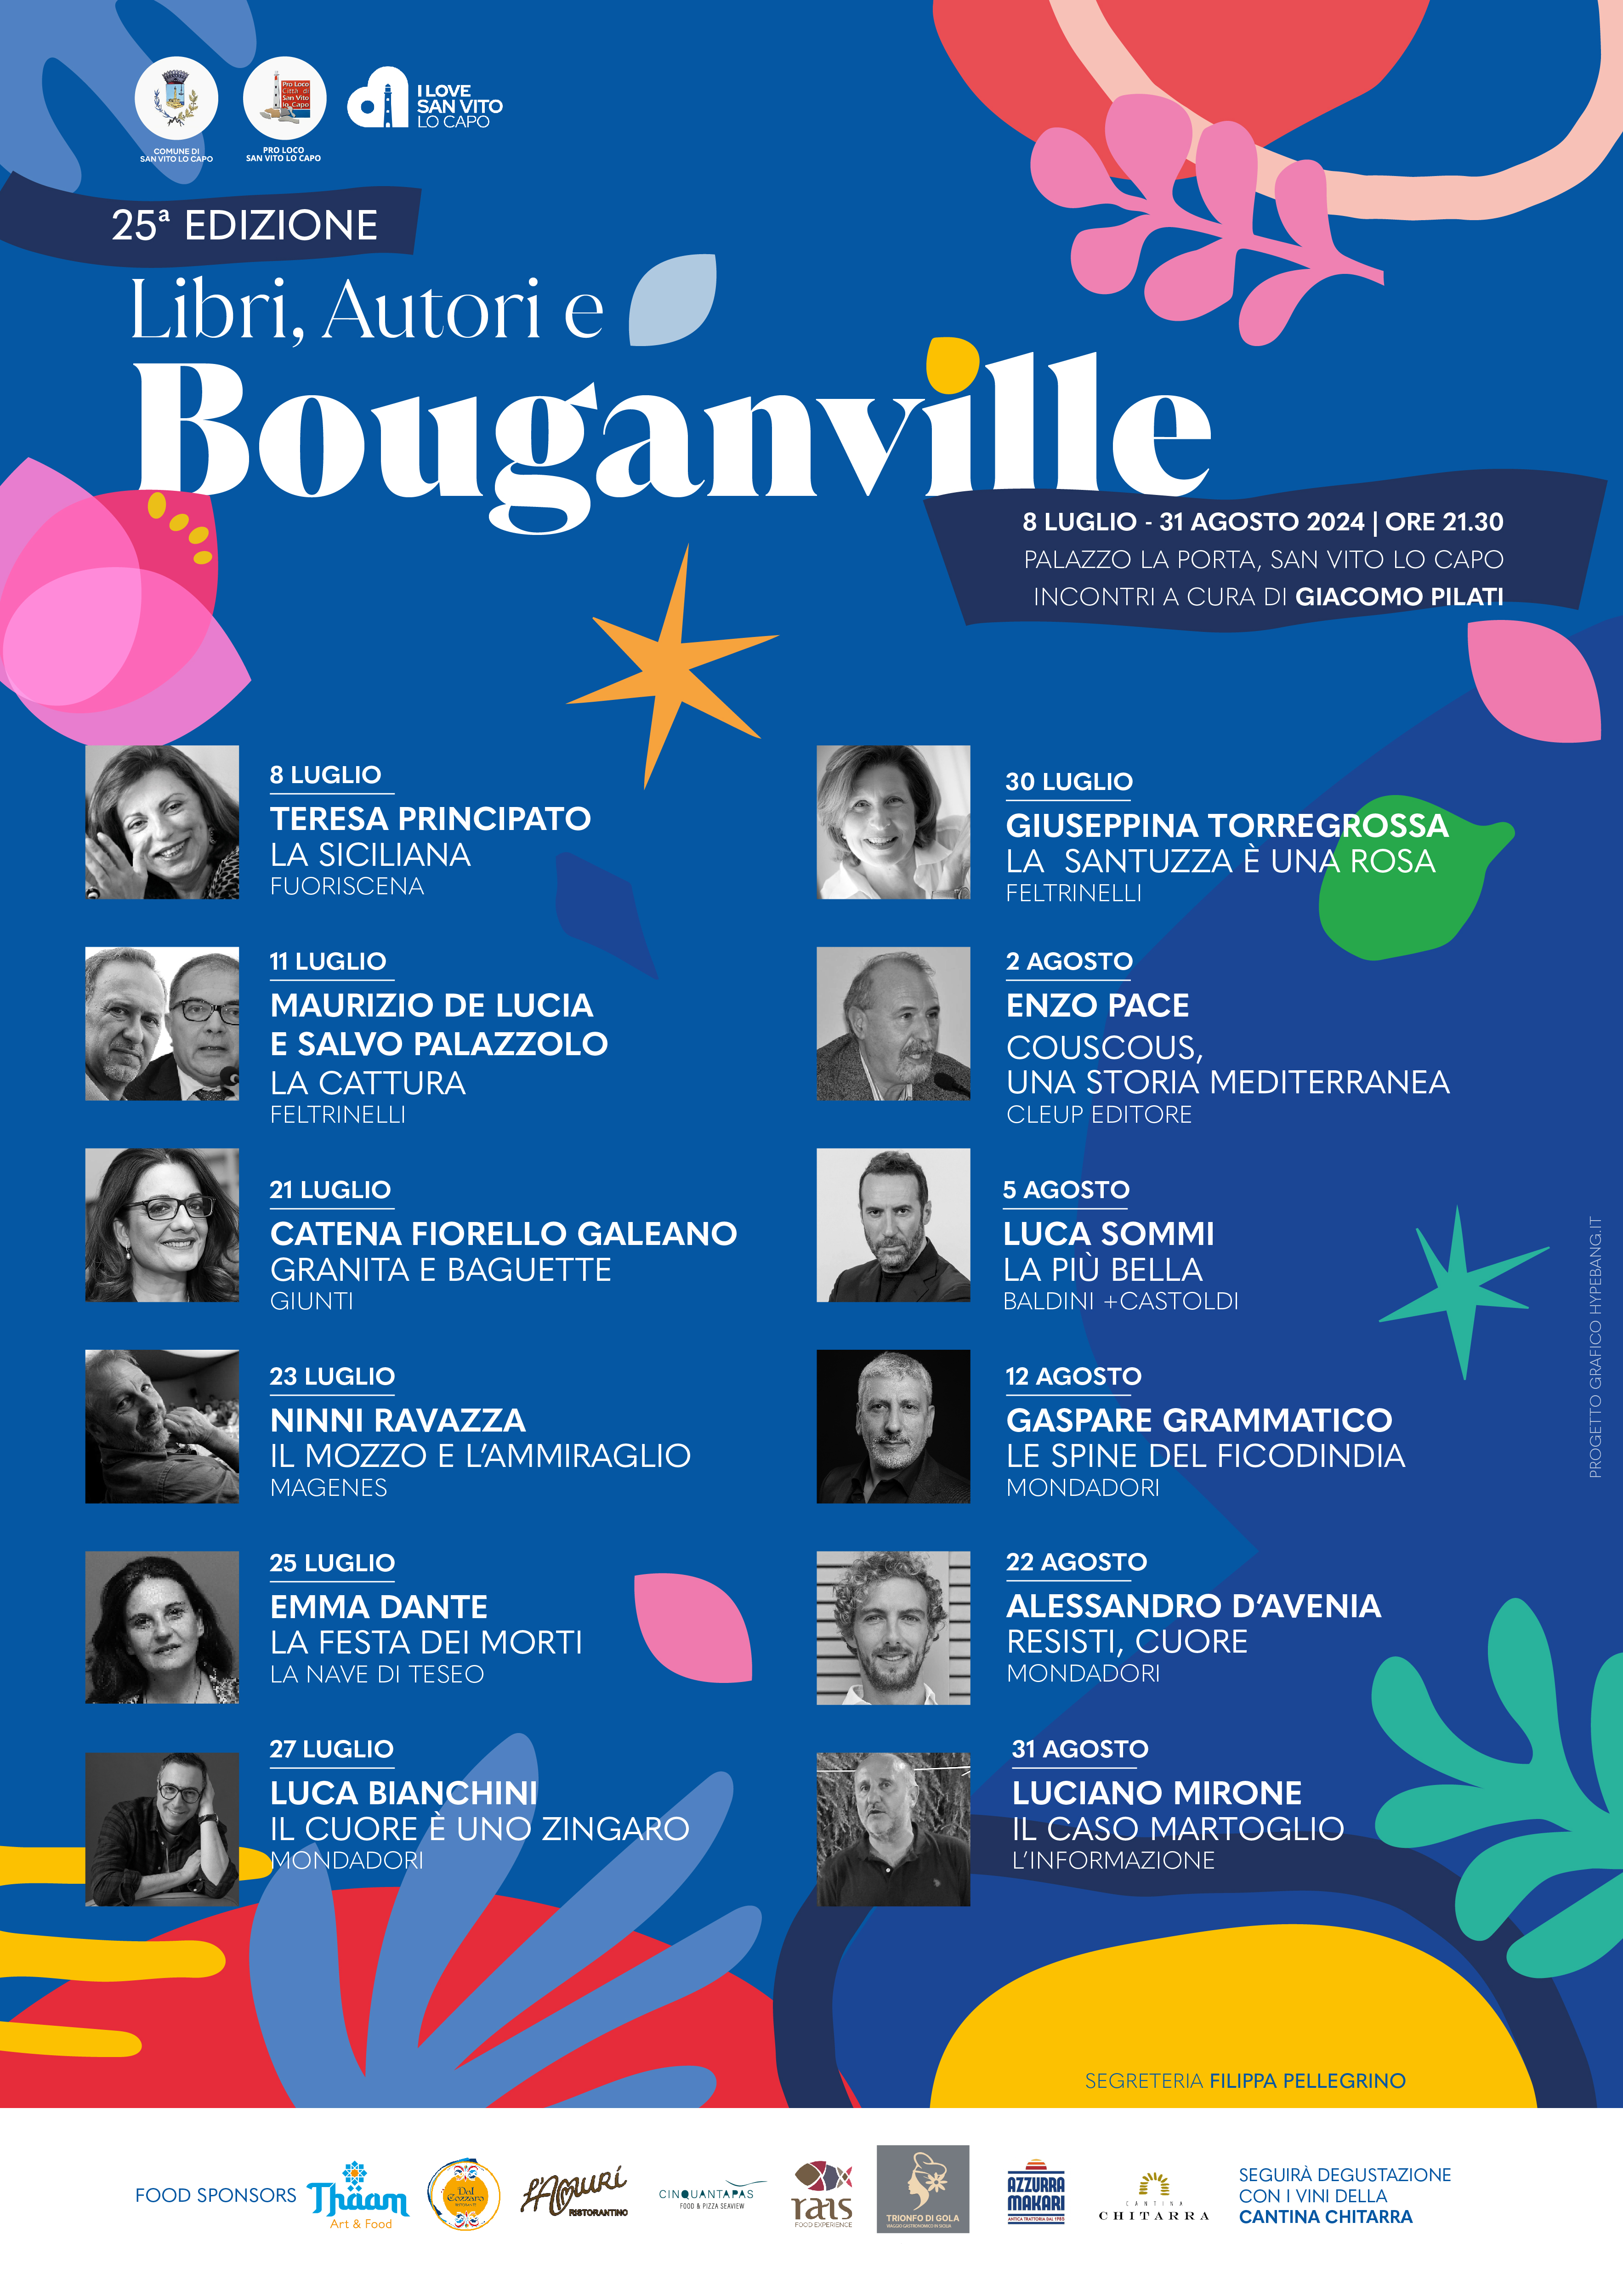 Libri, Autori e Bouganville 2024